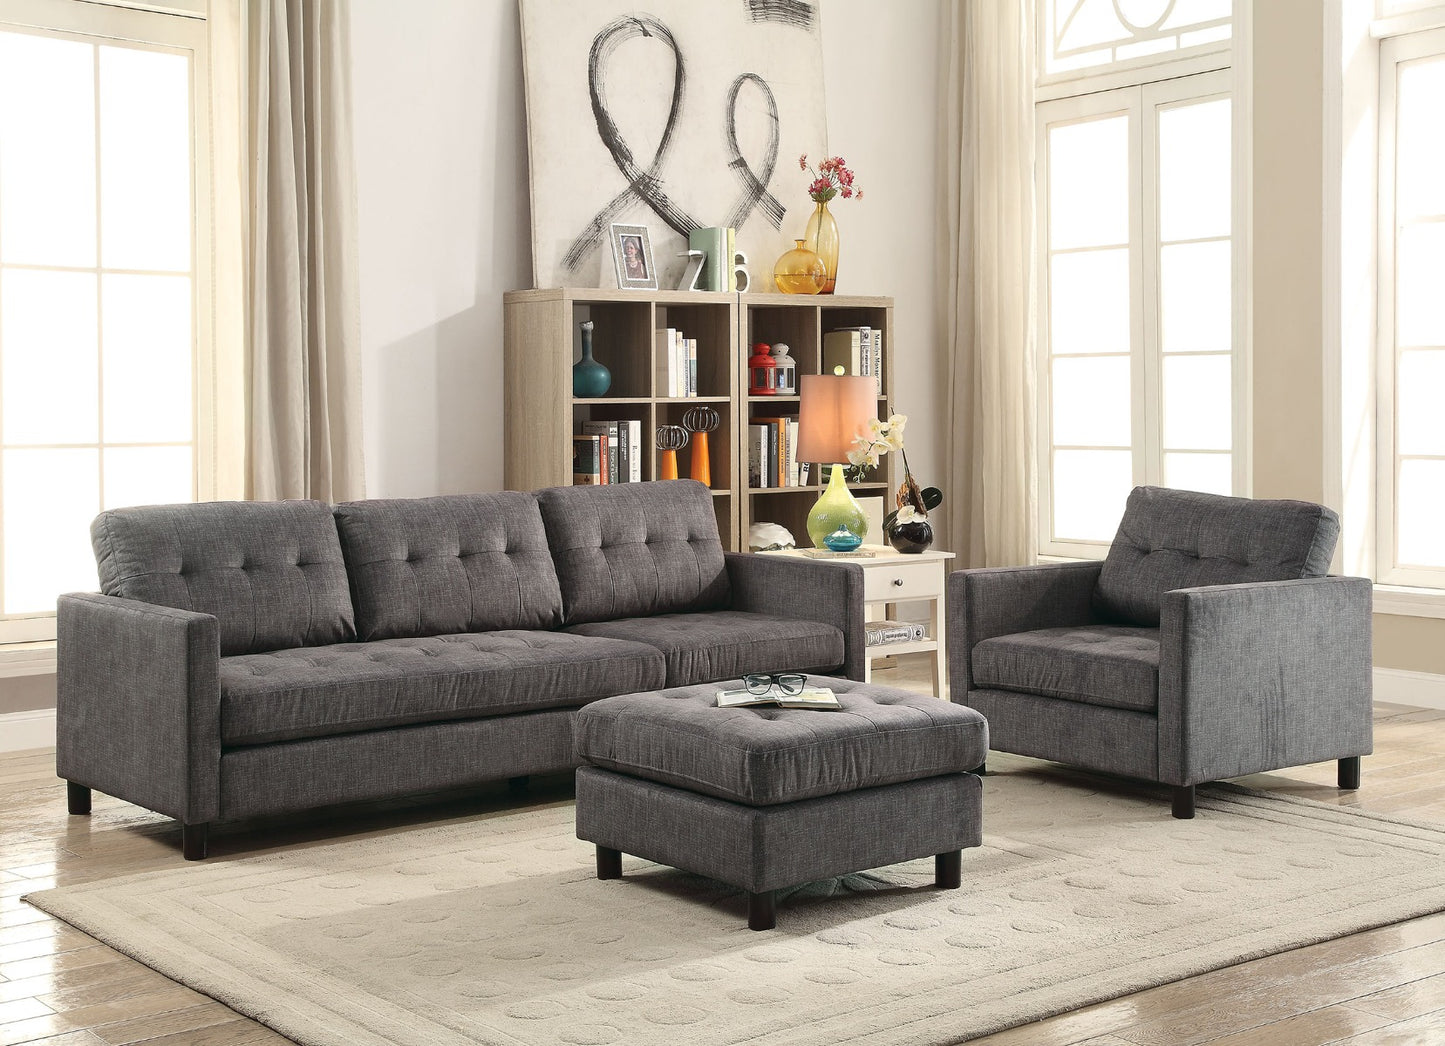 Acme Furniture Ceasar Sofa - Chair & Ottoman